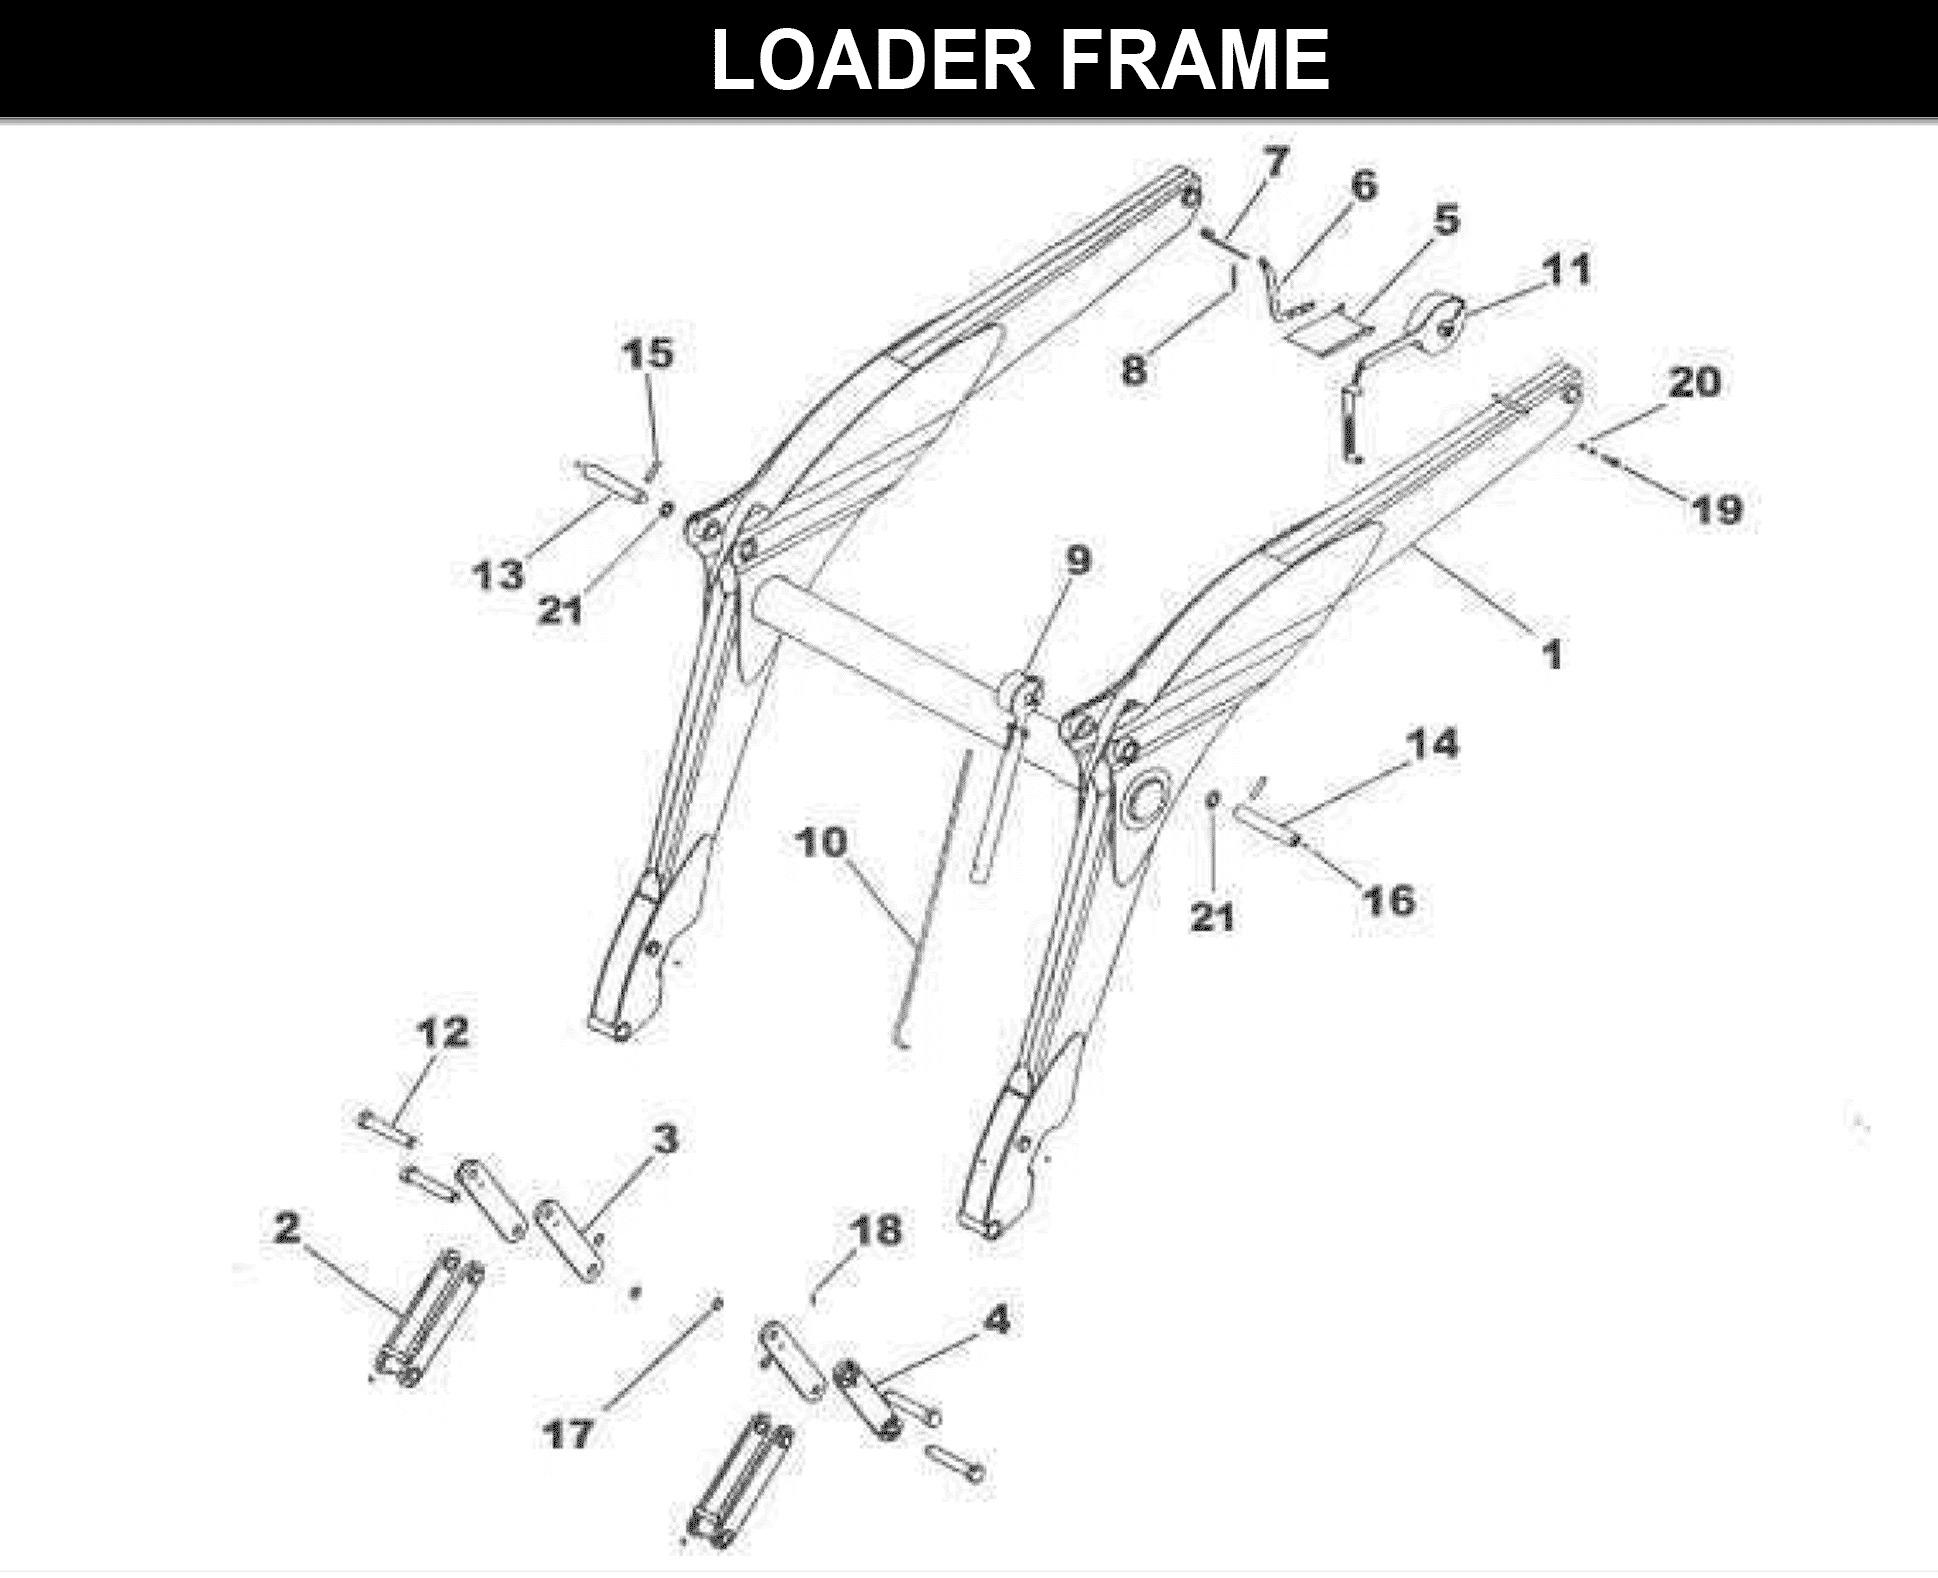 CC-340 Loader Frame (Rev.1)